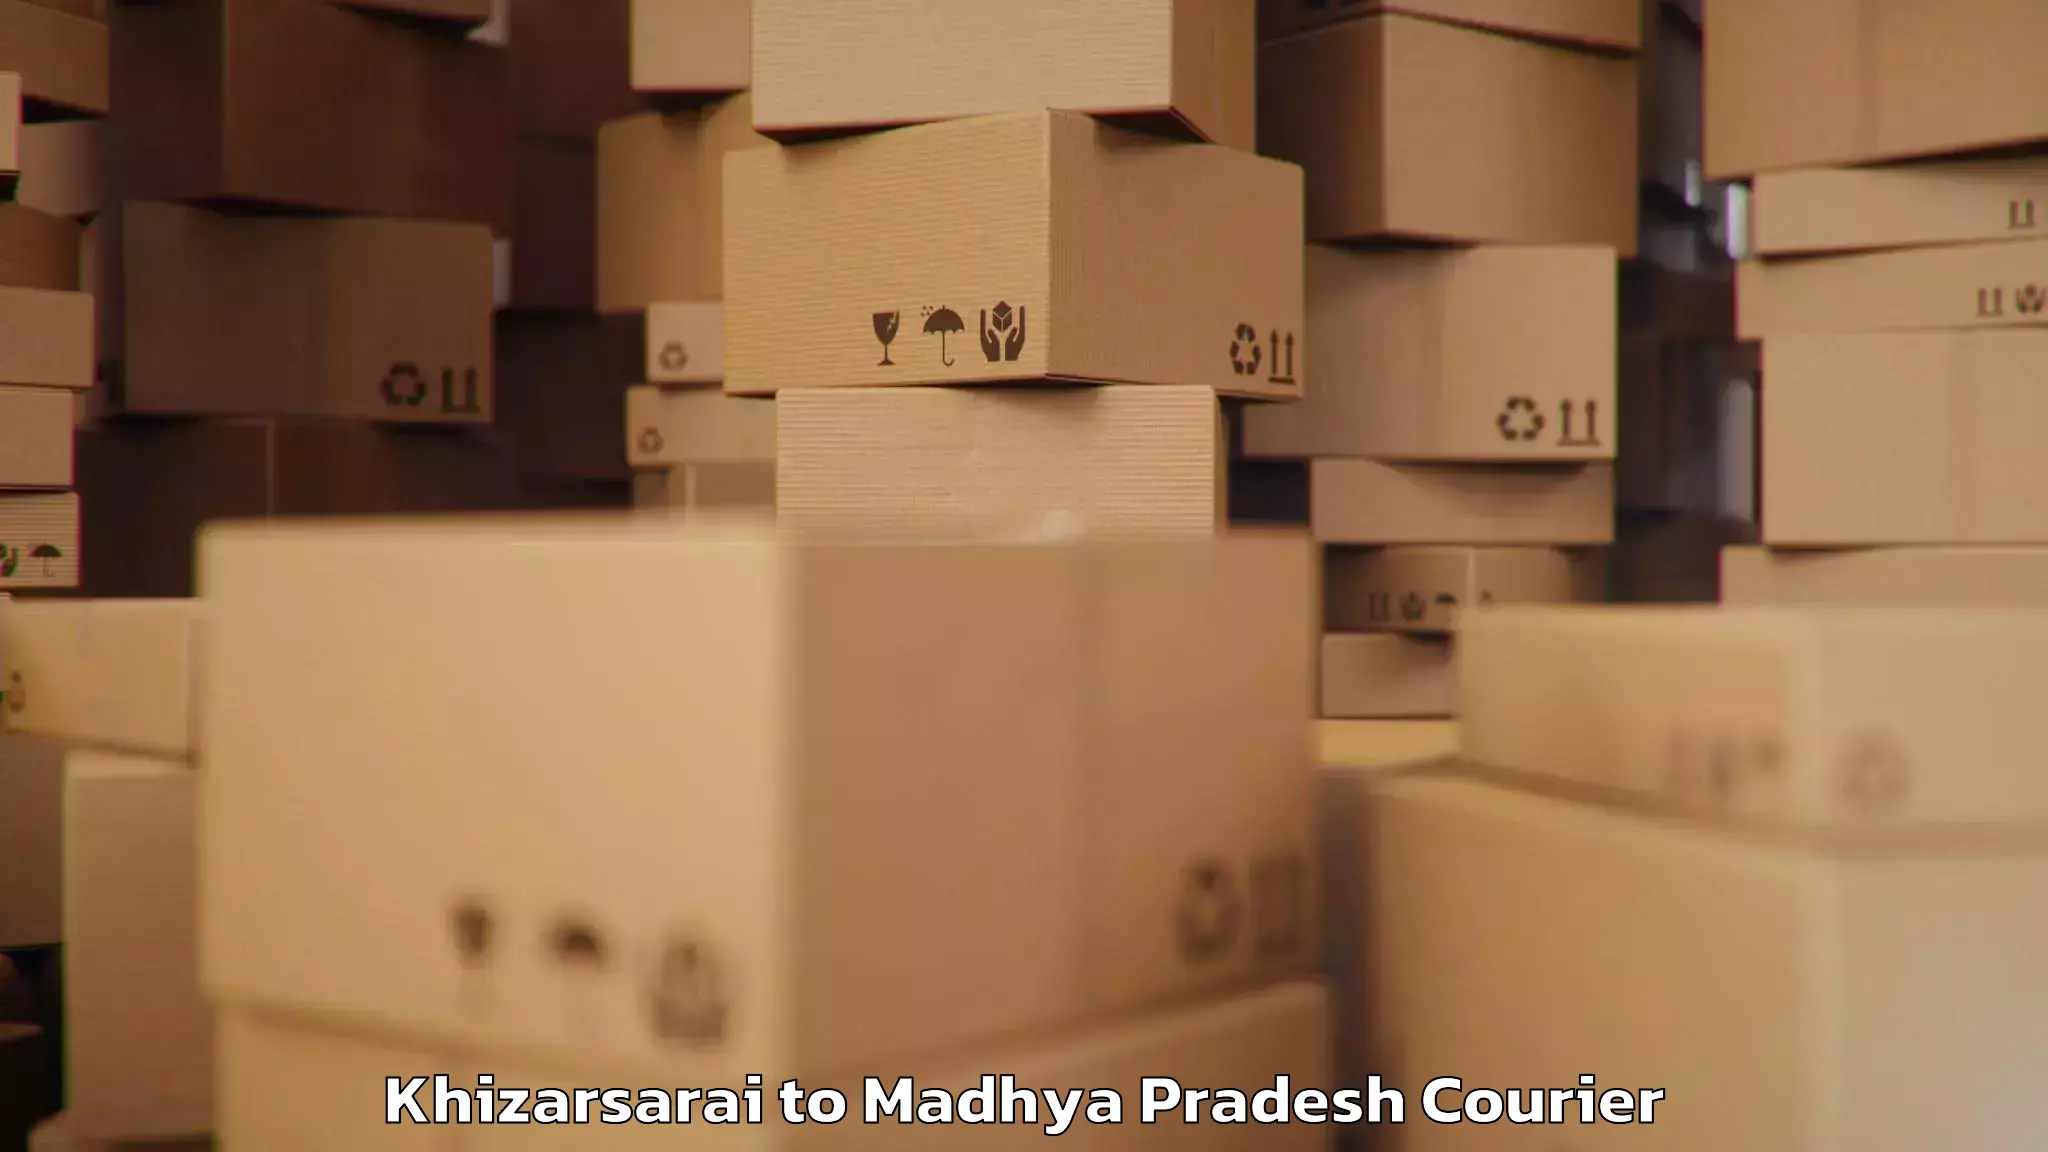 Baggage shipping logistics Khizarsarai to Madhya Pradesh